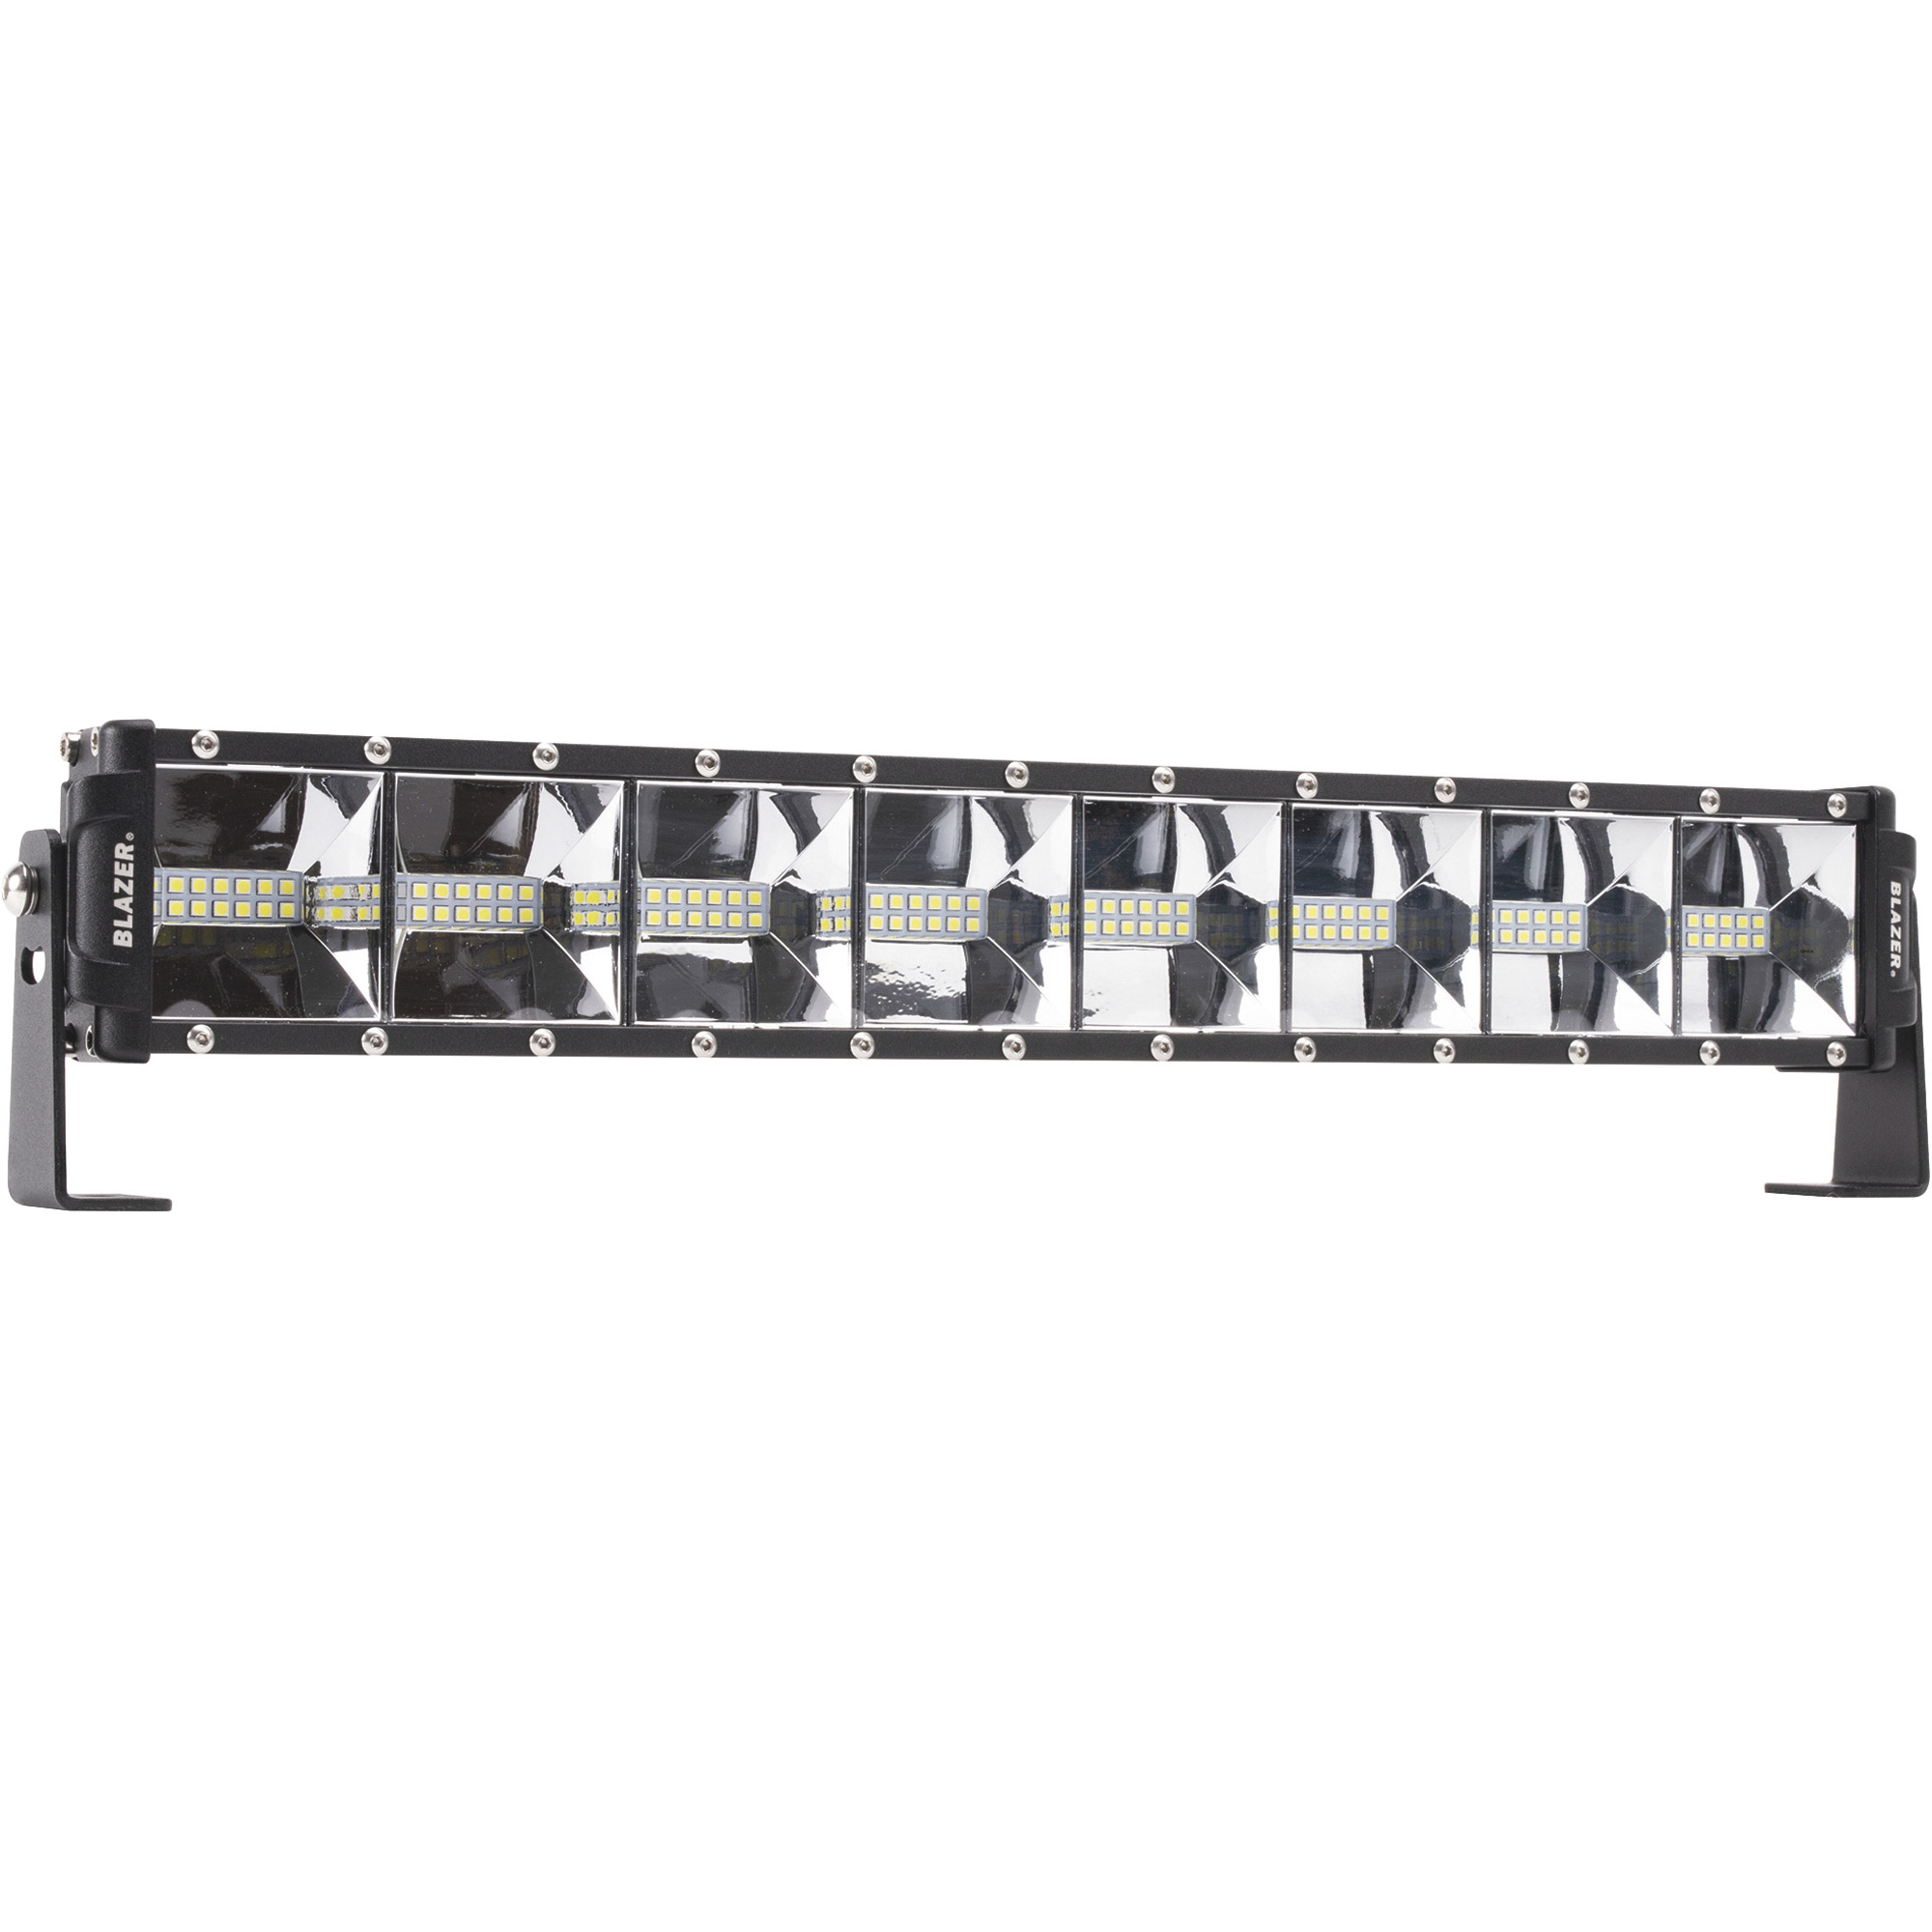 Blazer 12 Volt LED Large Size Wide Beam Light Bar â 17.5Inch, 96 LEDs, 4,800 Raw Lumens / 3,600 Effective Lumens, Permanent Mount, Model CWL525